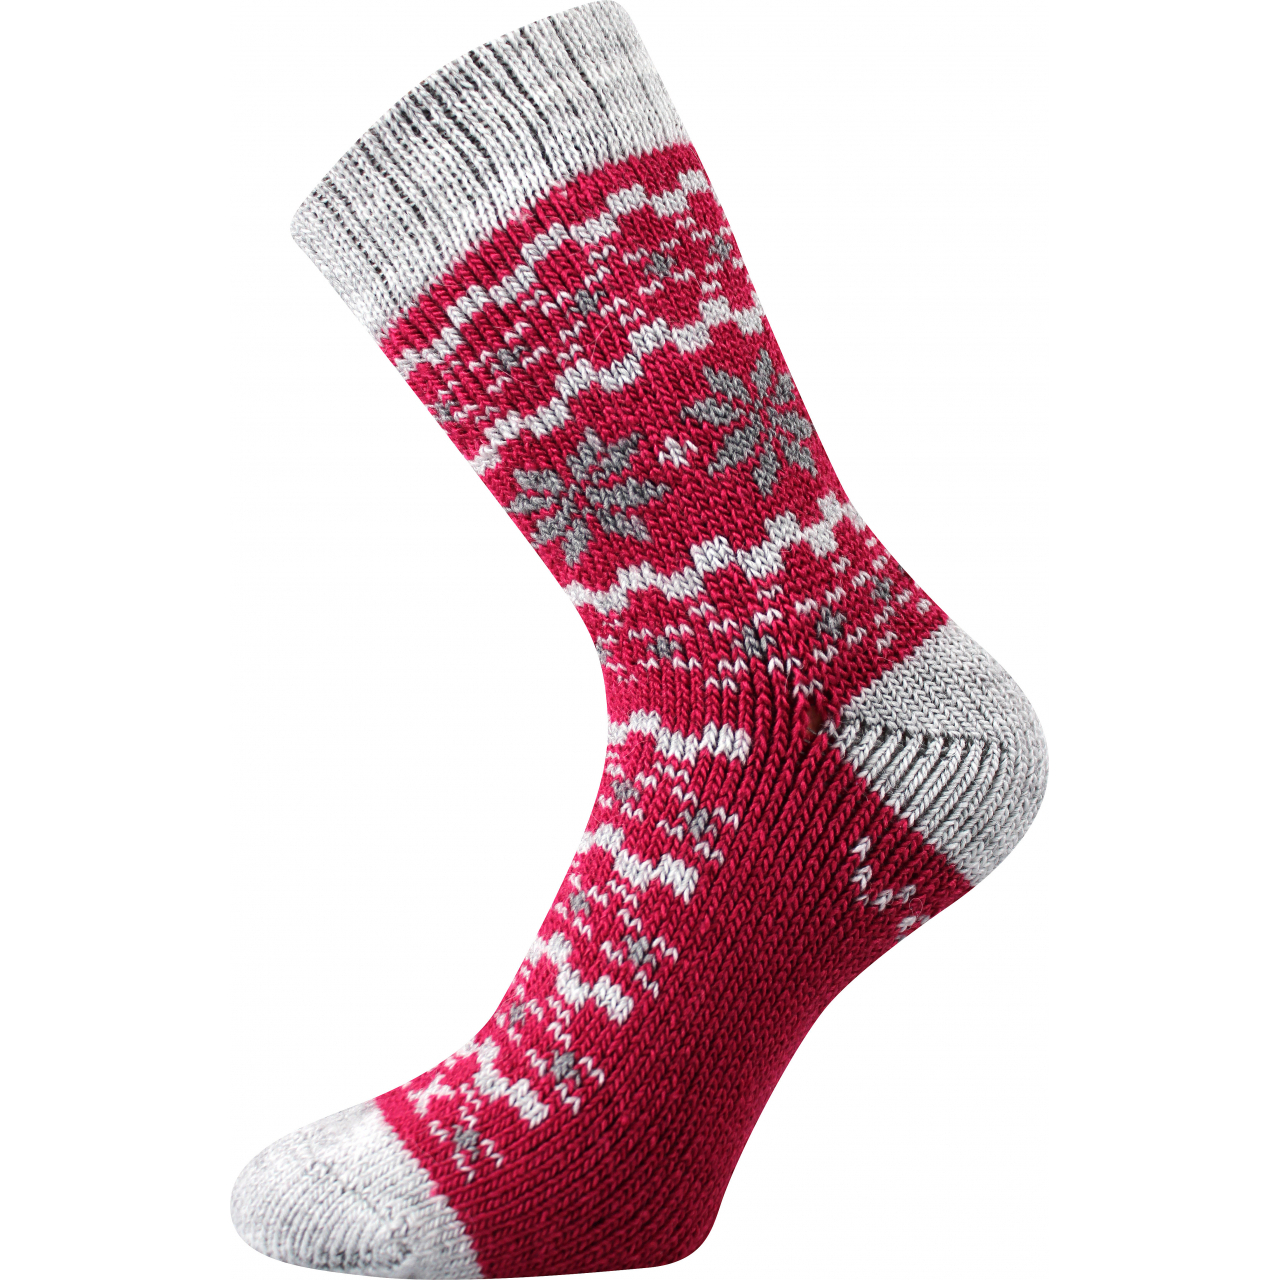 Ponožky unisex zimní Voxx Trondelag - červené, 35-38